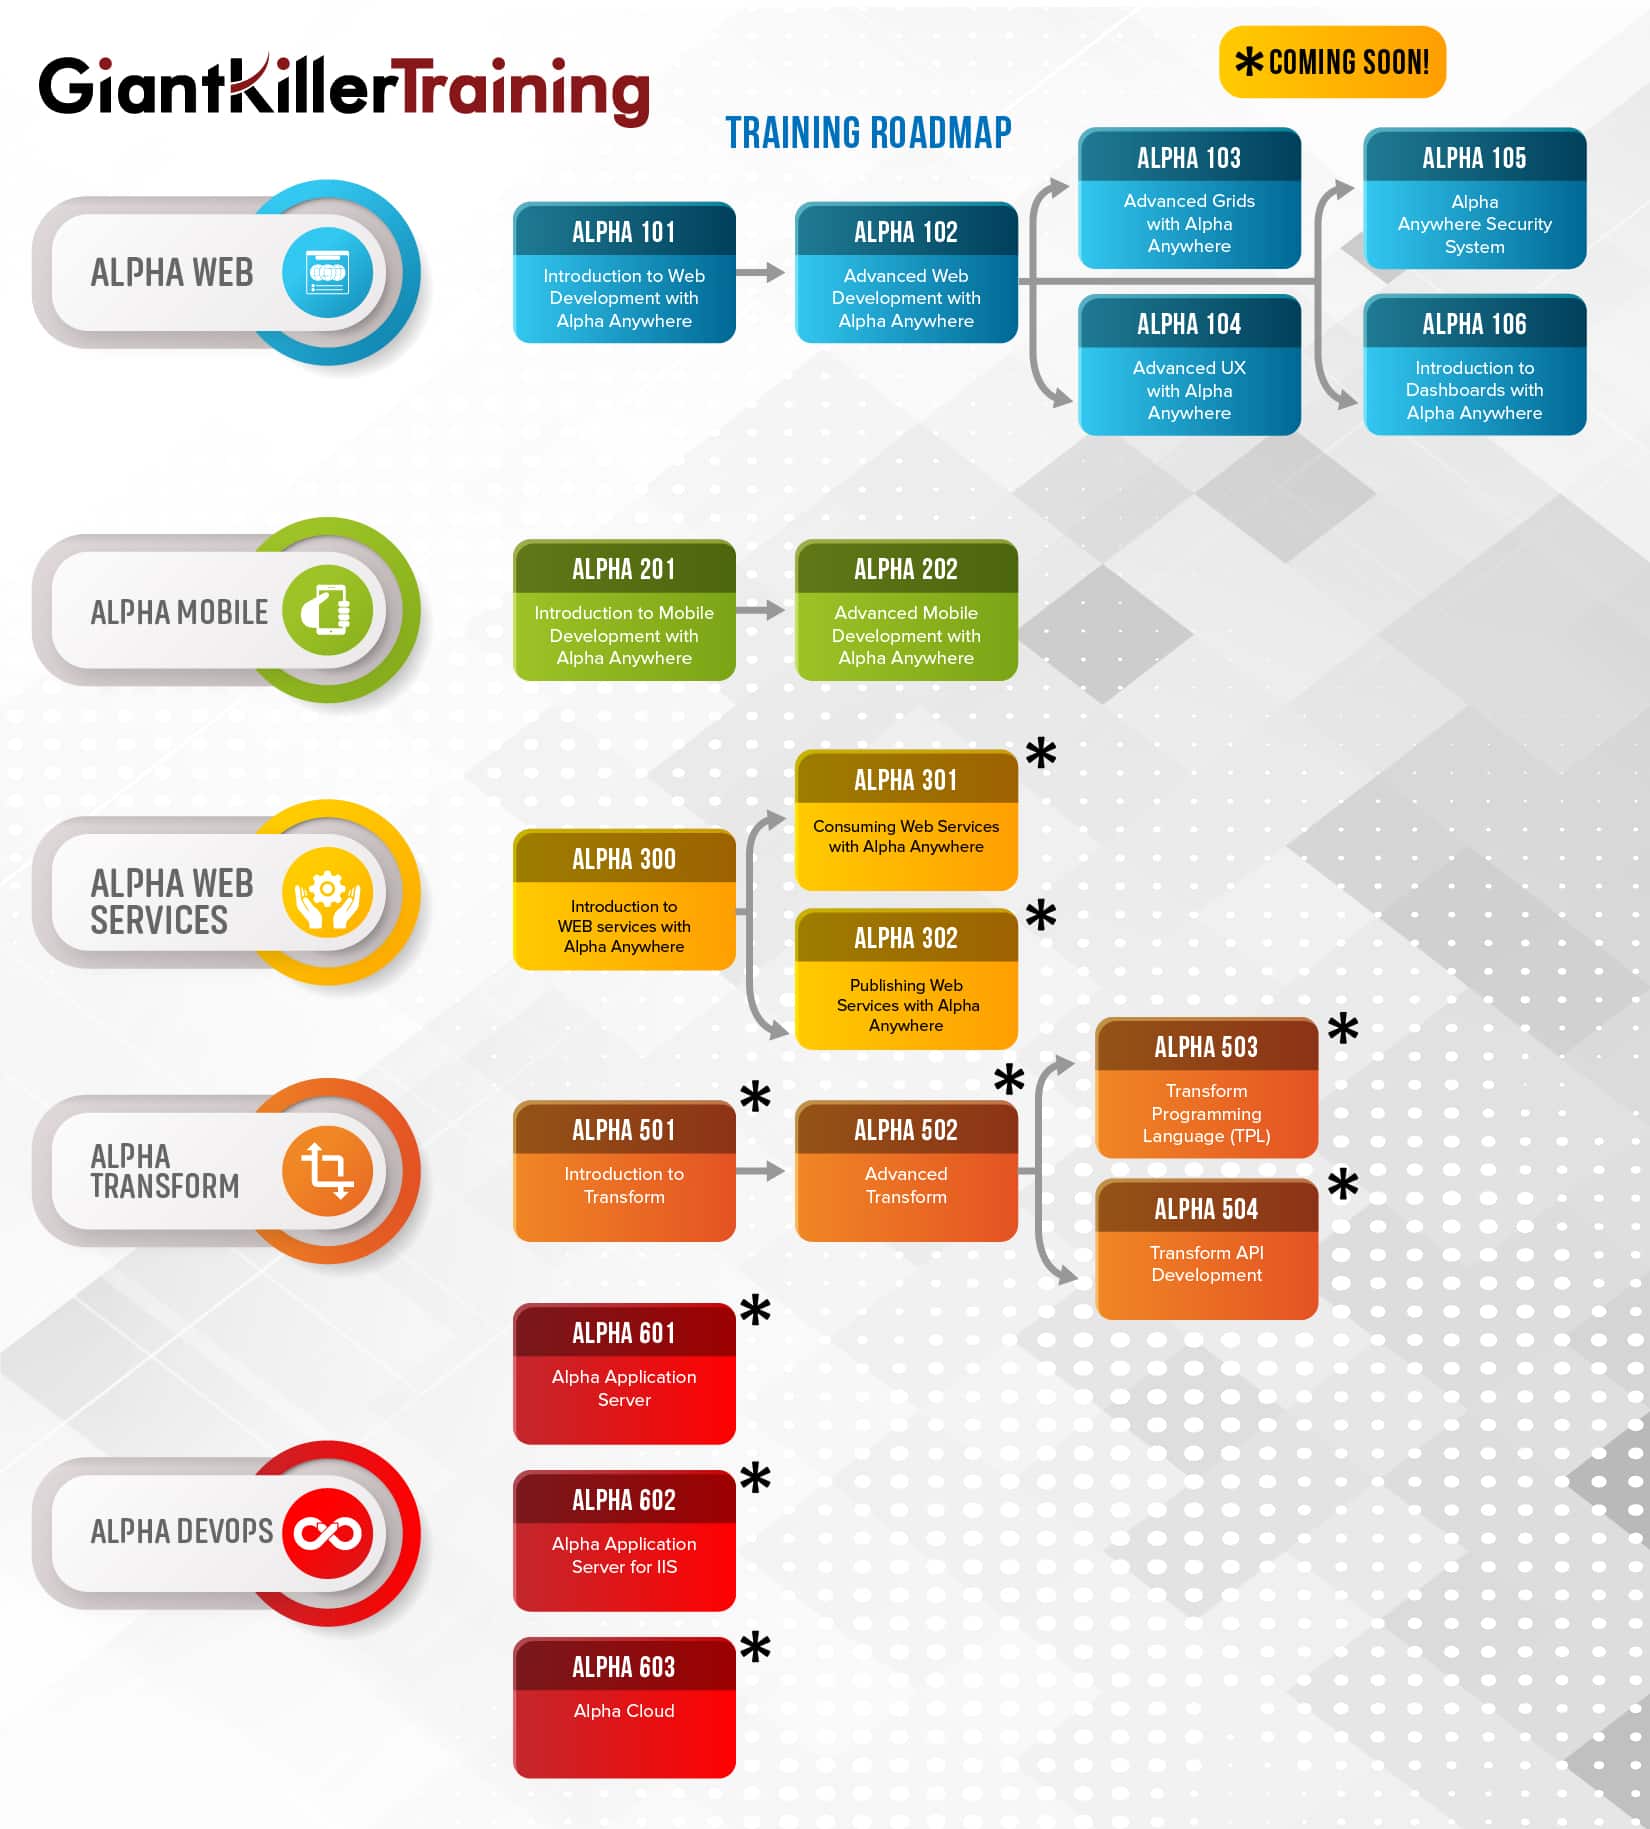 GiantKillerTraining Roadmap